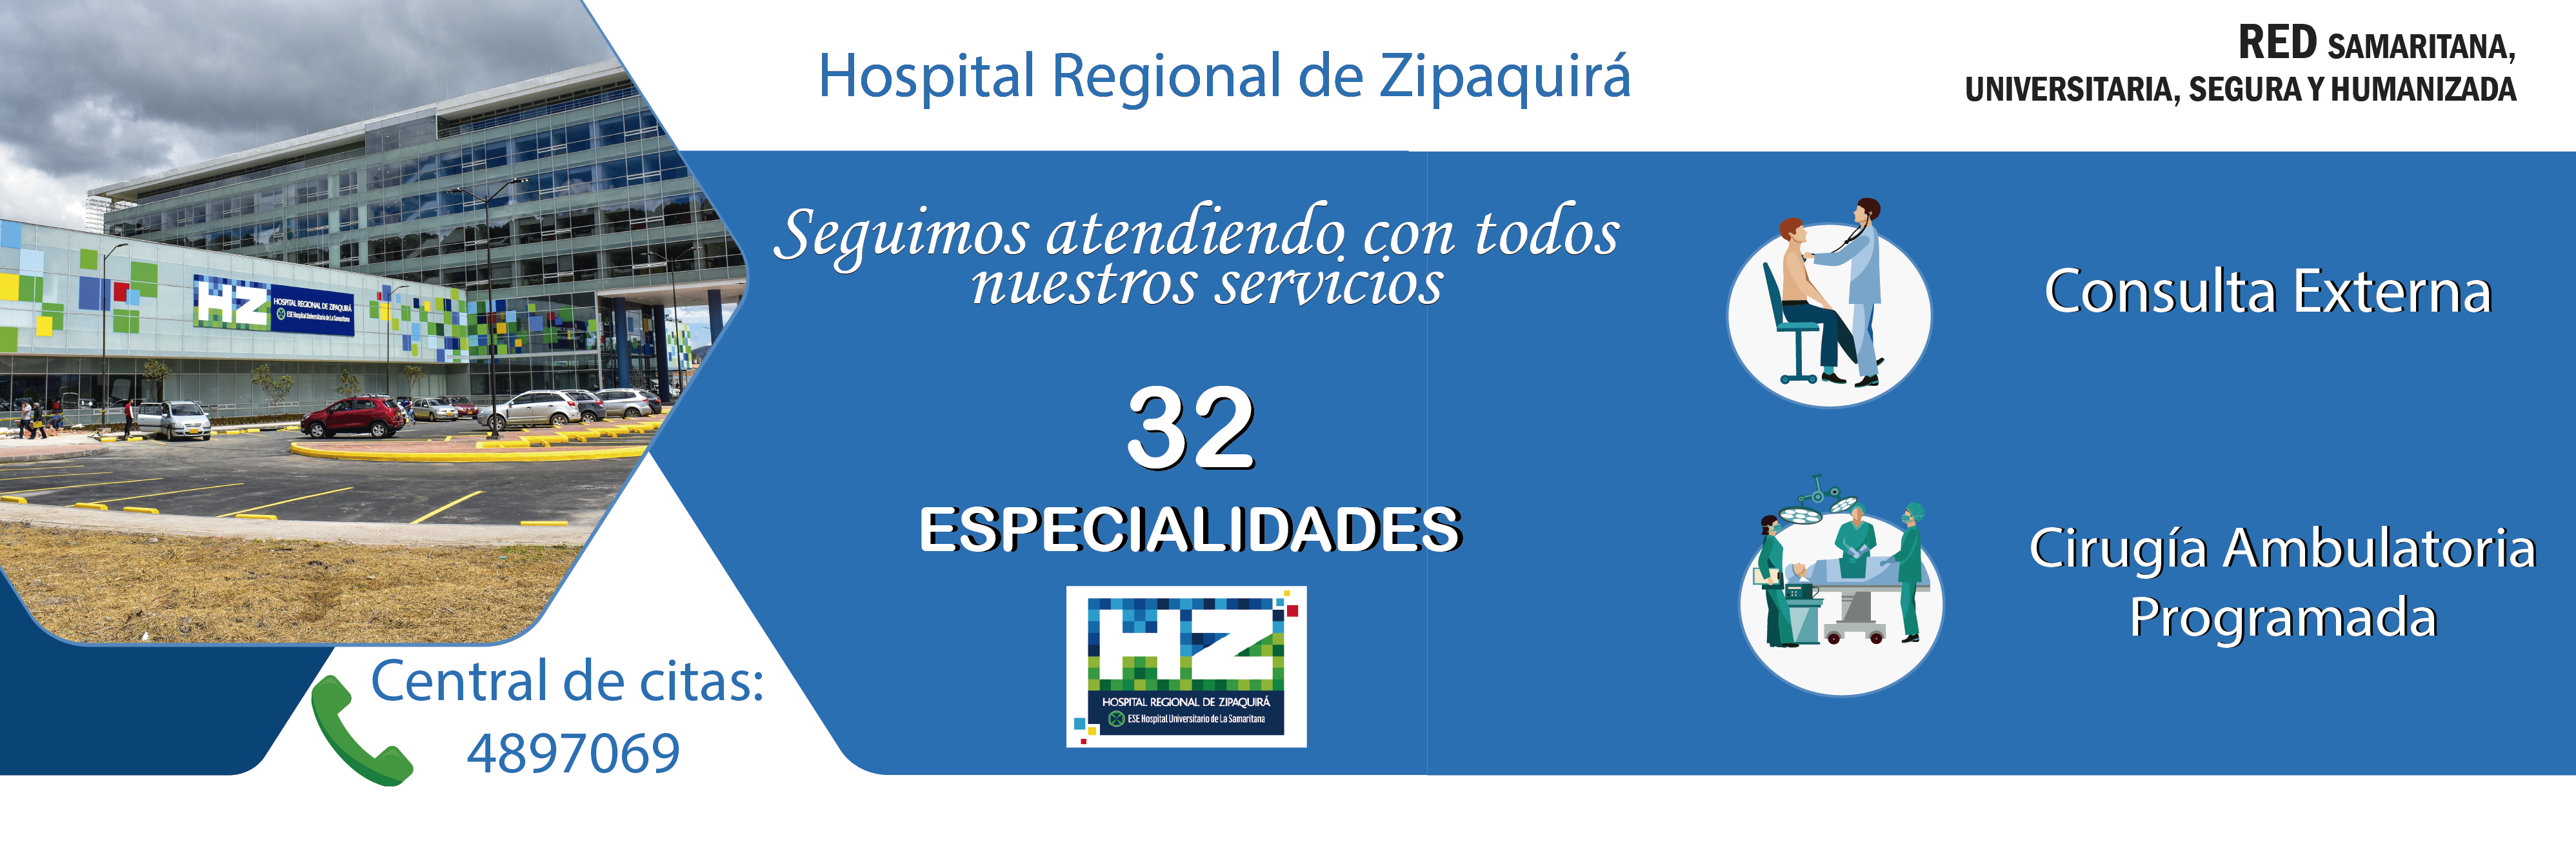 Servicios del Hospital de Zipaquira